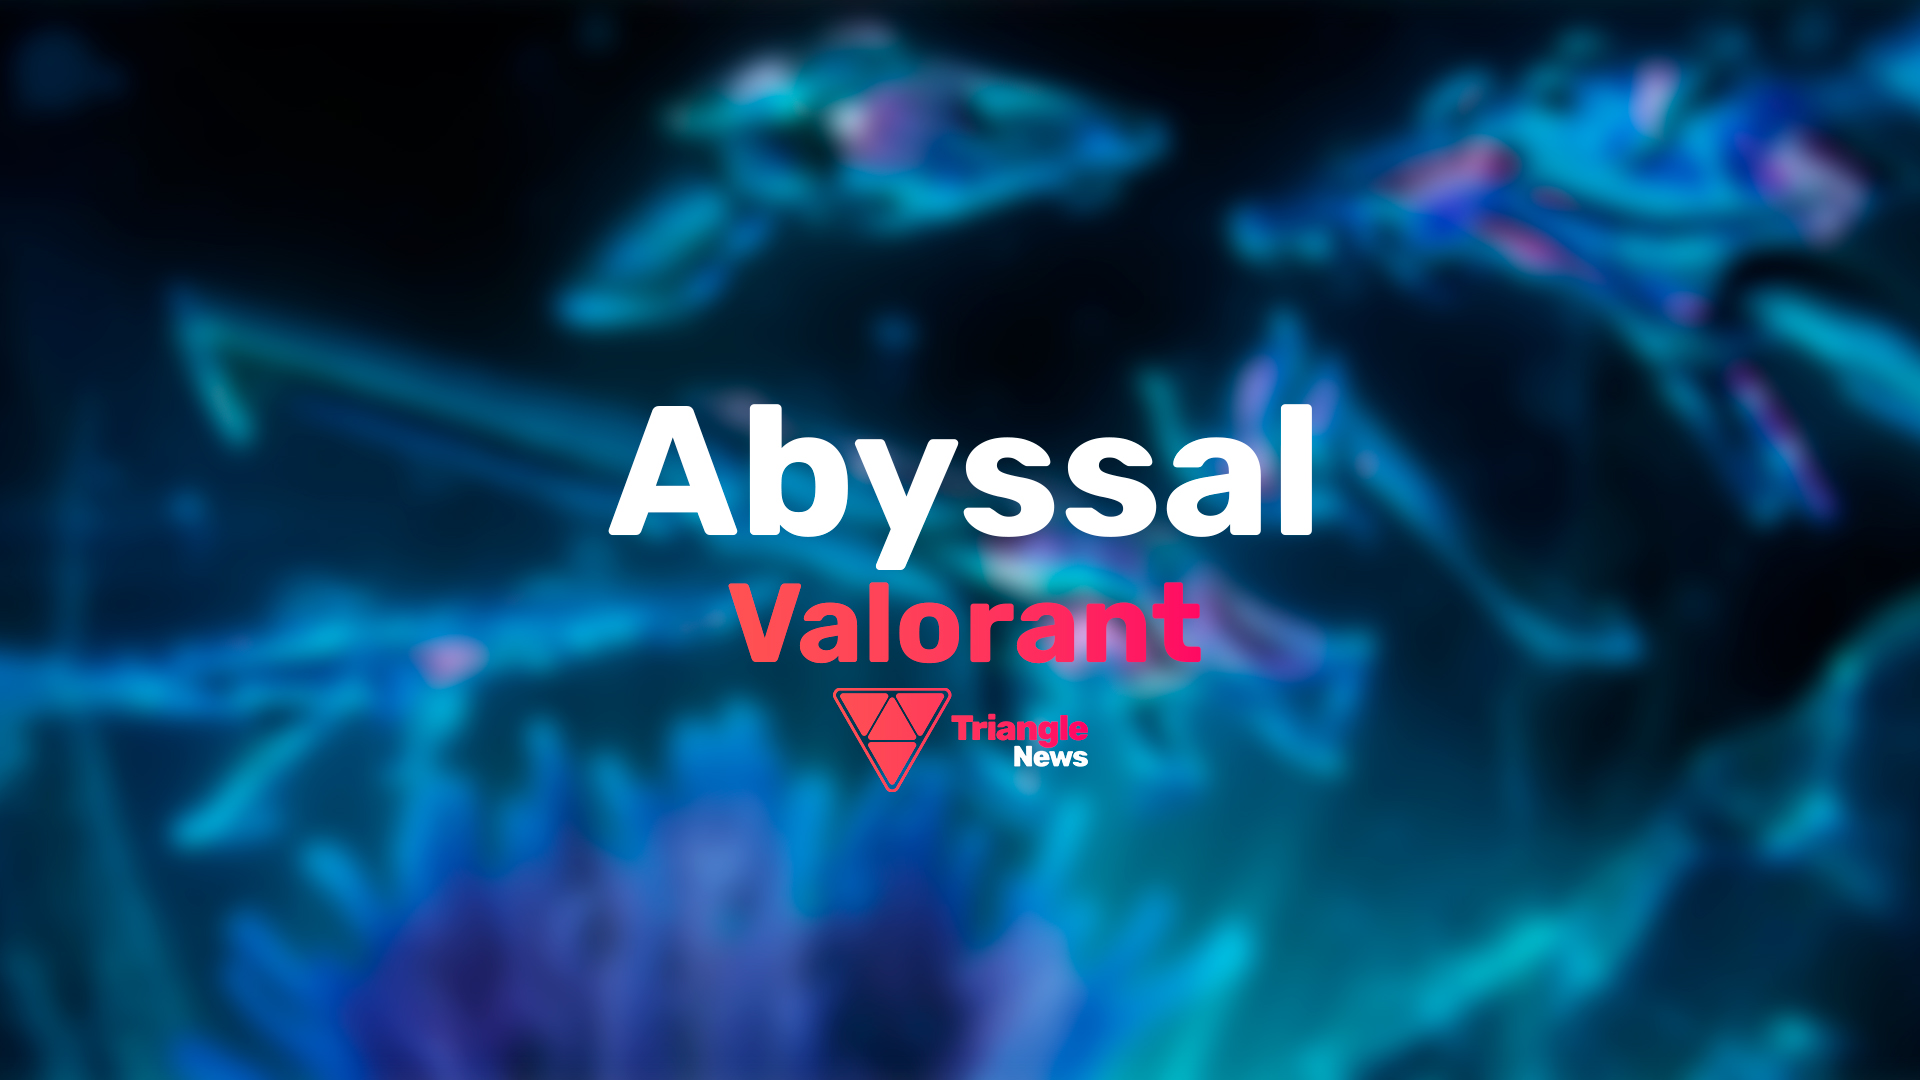 В Valorant появилась новая необычная и недорогая коллекция скинов, включающая в себя 5 предметов — «Abyssal» (Бездна).